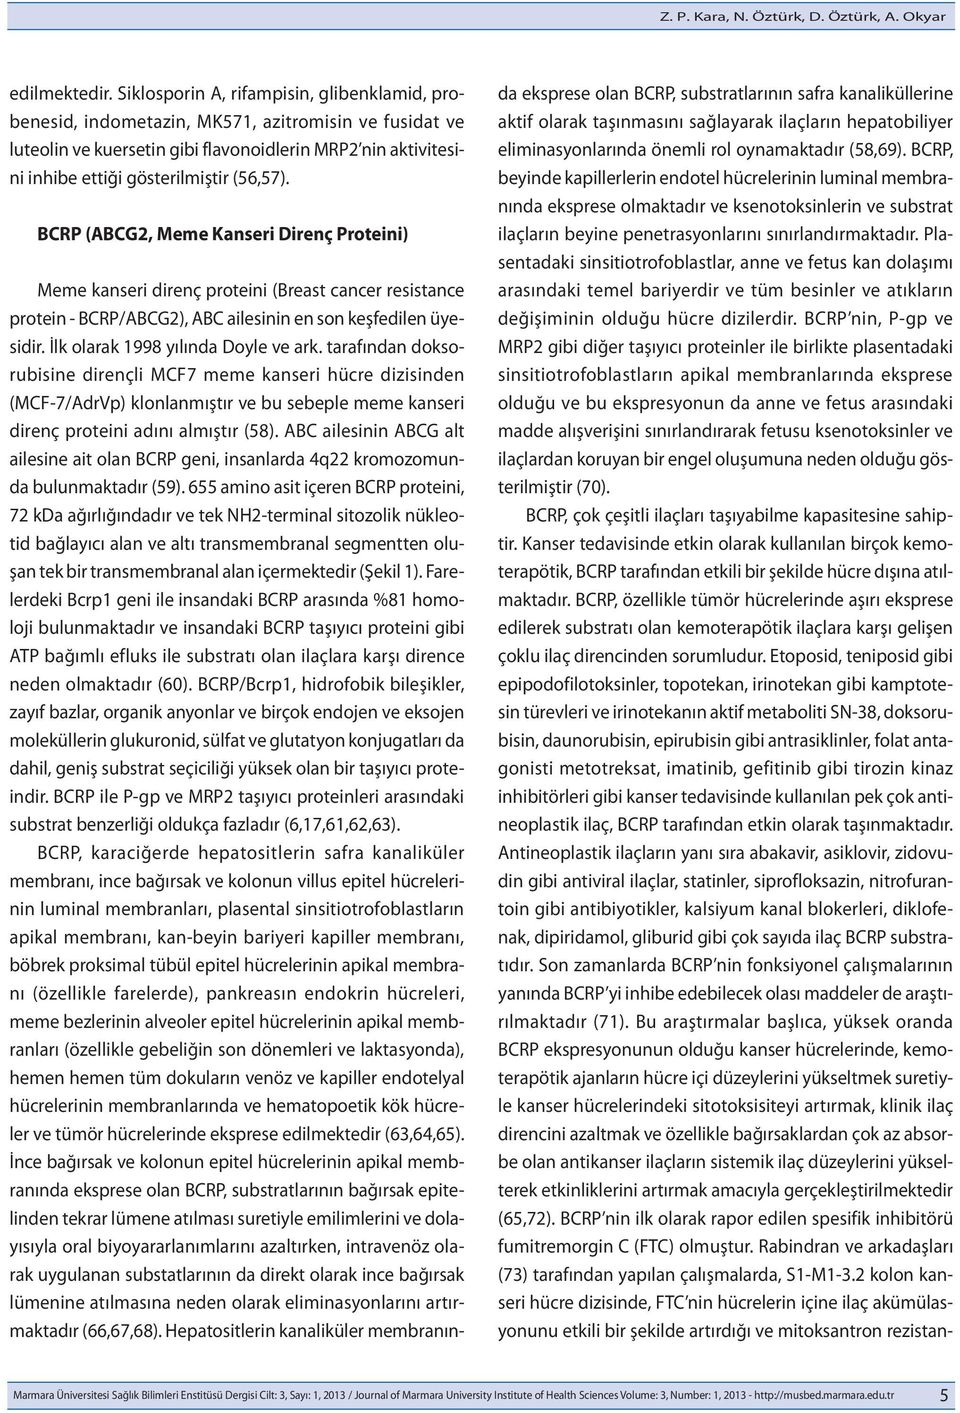 BCRP (ABCG2, Meme Kanseri Direnç Proteini) Meme kanseri direnç proteini (Breast cancer resistance protein - BCRP/ABCG2), ABC ailesinin en son keşfedilen üyesidir. İlk olarak 1998 yılında Doyle ve ark.